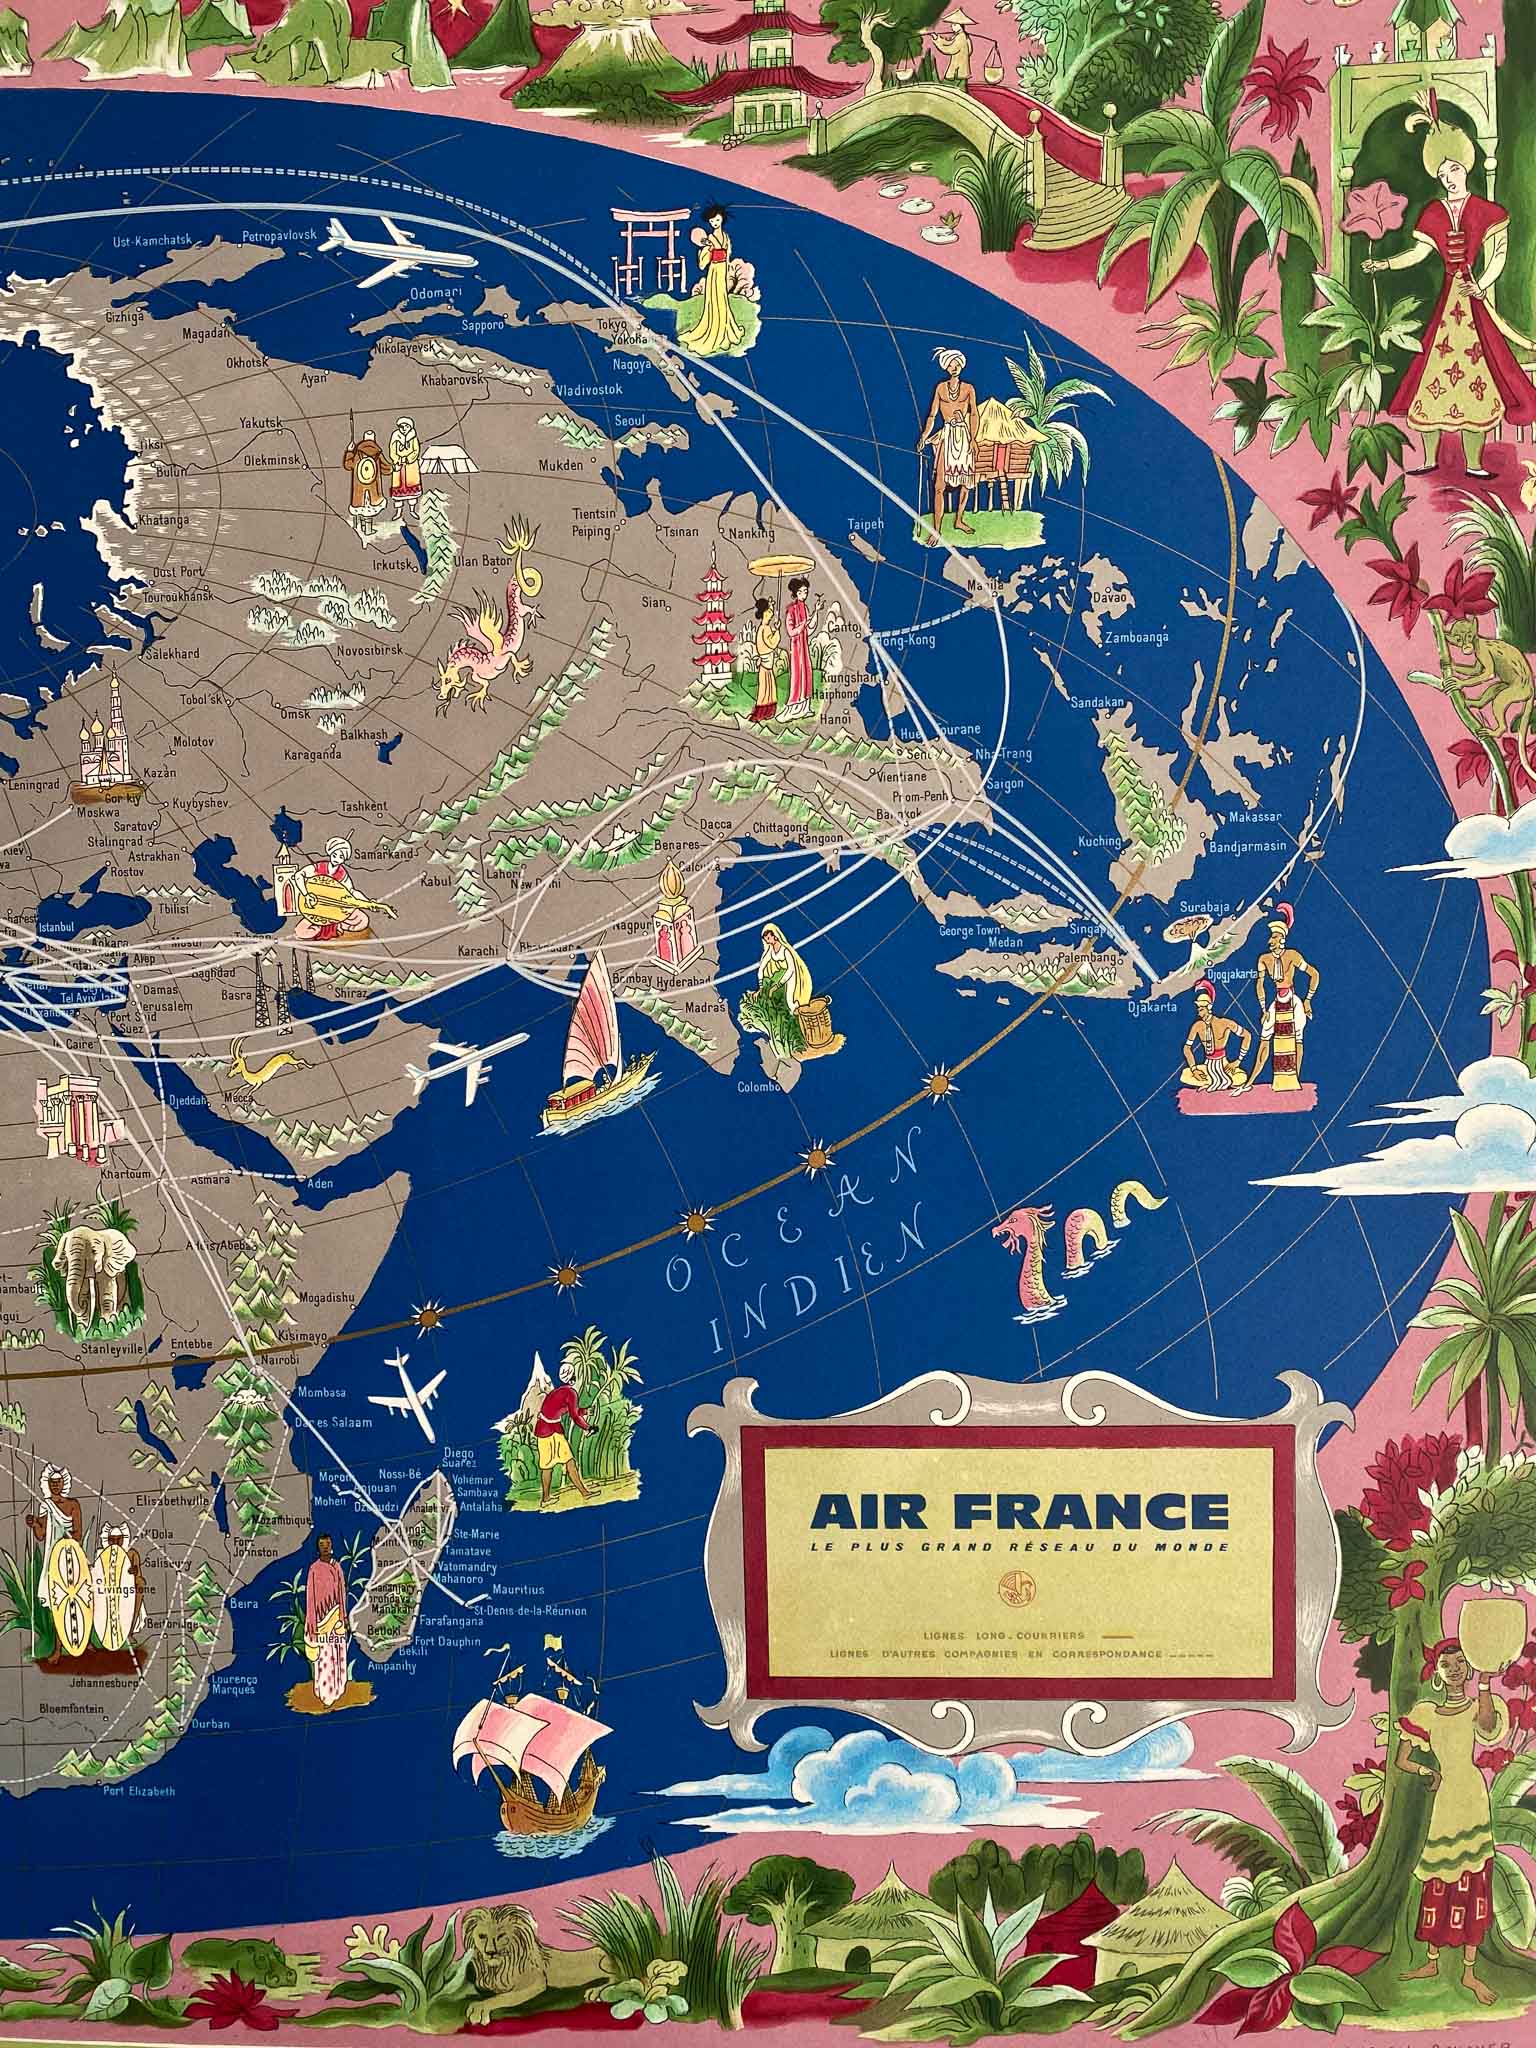 Superbe Affiche Lithographique, très décorative, les dorures sont intenses, et les couleurs sont éclatantes et lumineuses  Planisphère de 1950, Air-France "le plus grand réseau du monde"